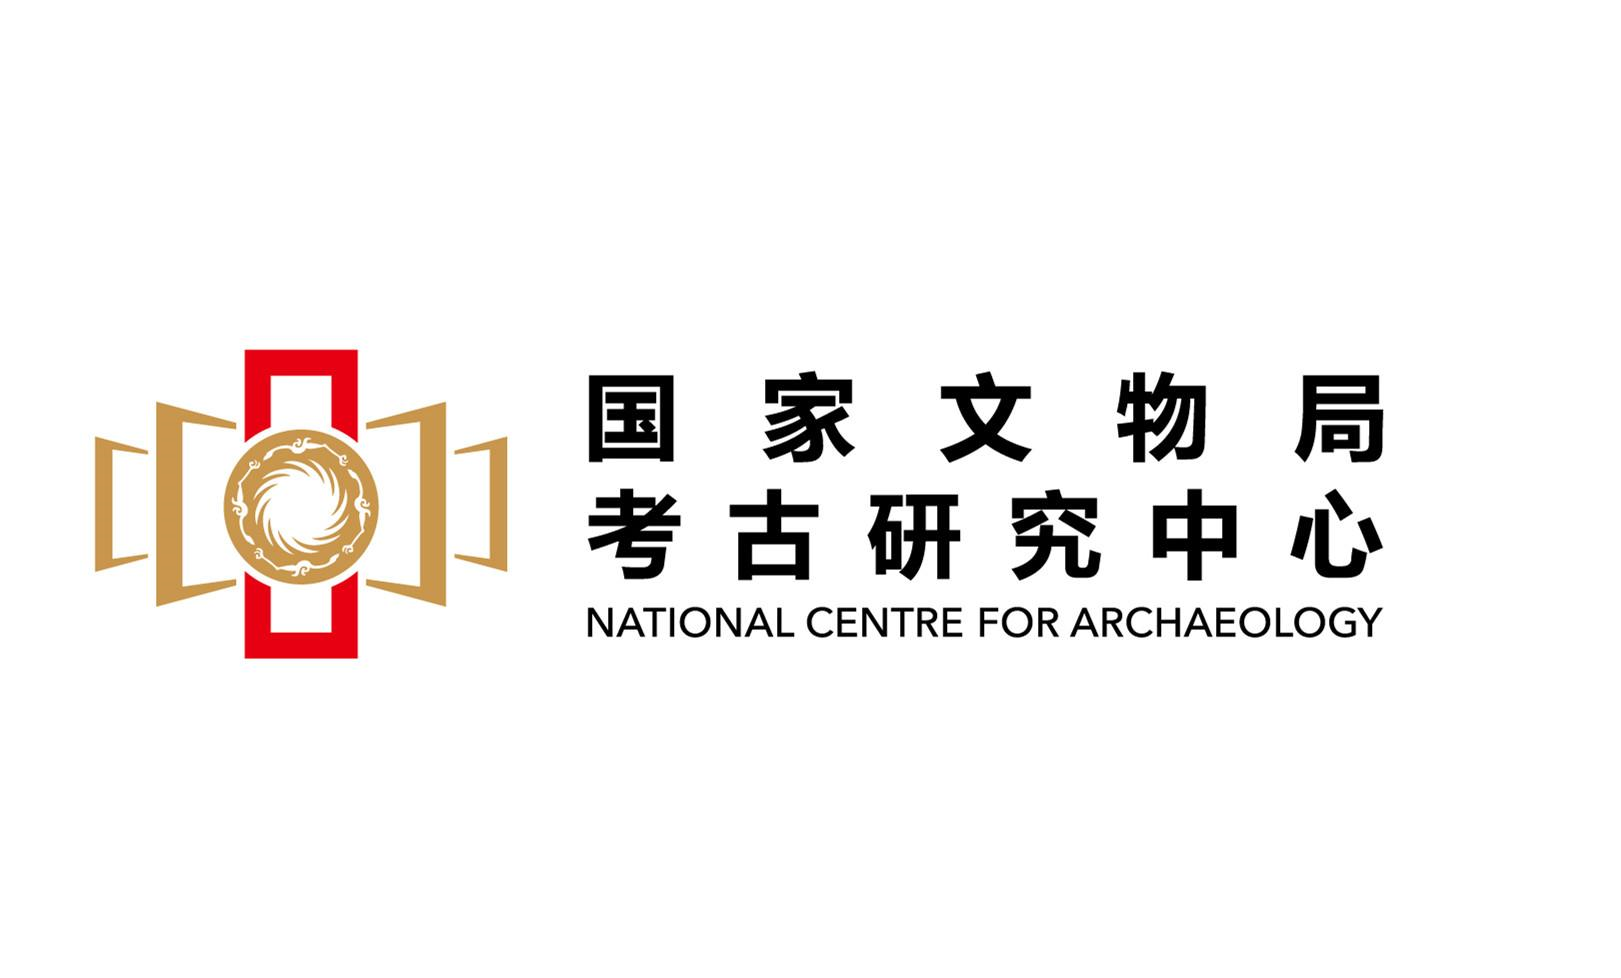 商标文字国家文物局 考古研究中心 national center for archaeology